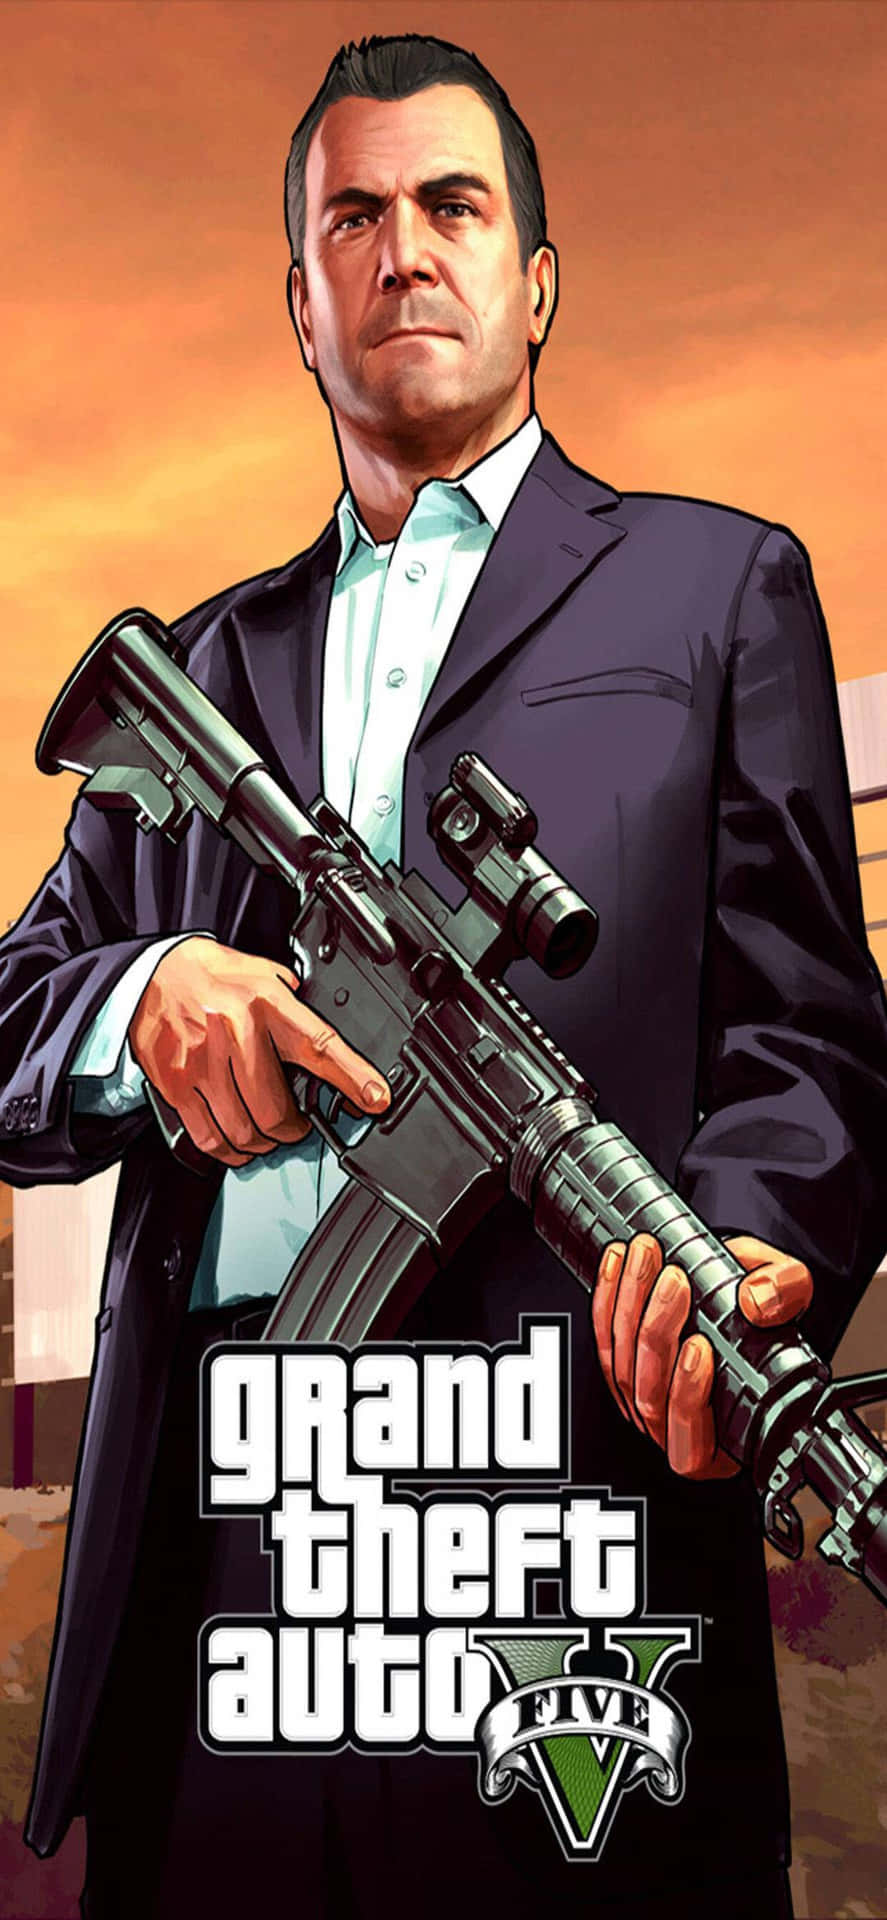 Iphonexs Max Bakgrundsbild Med Grand Theft Auto V, Michael Med Ett Automatgevär.